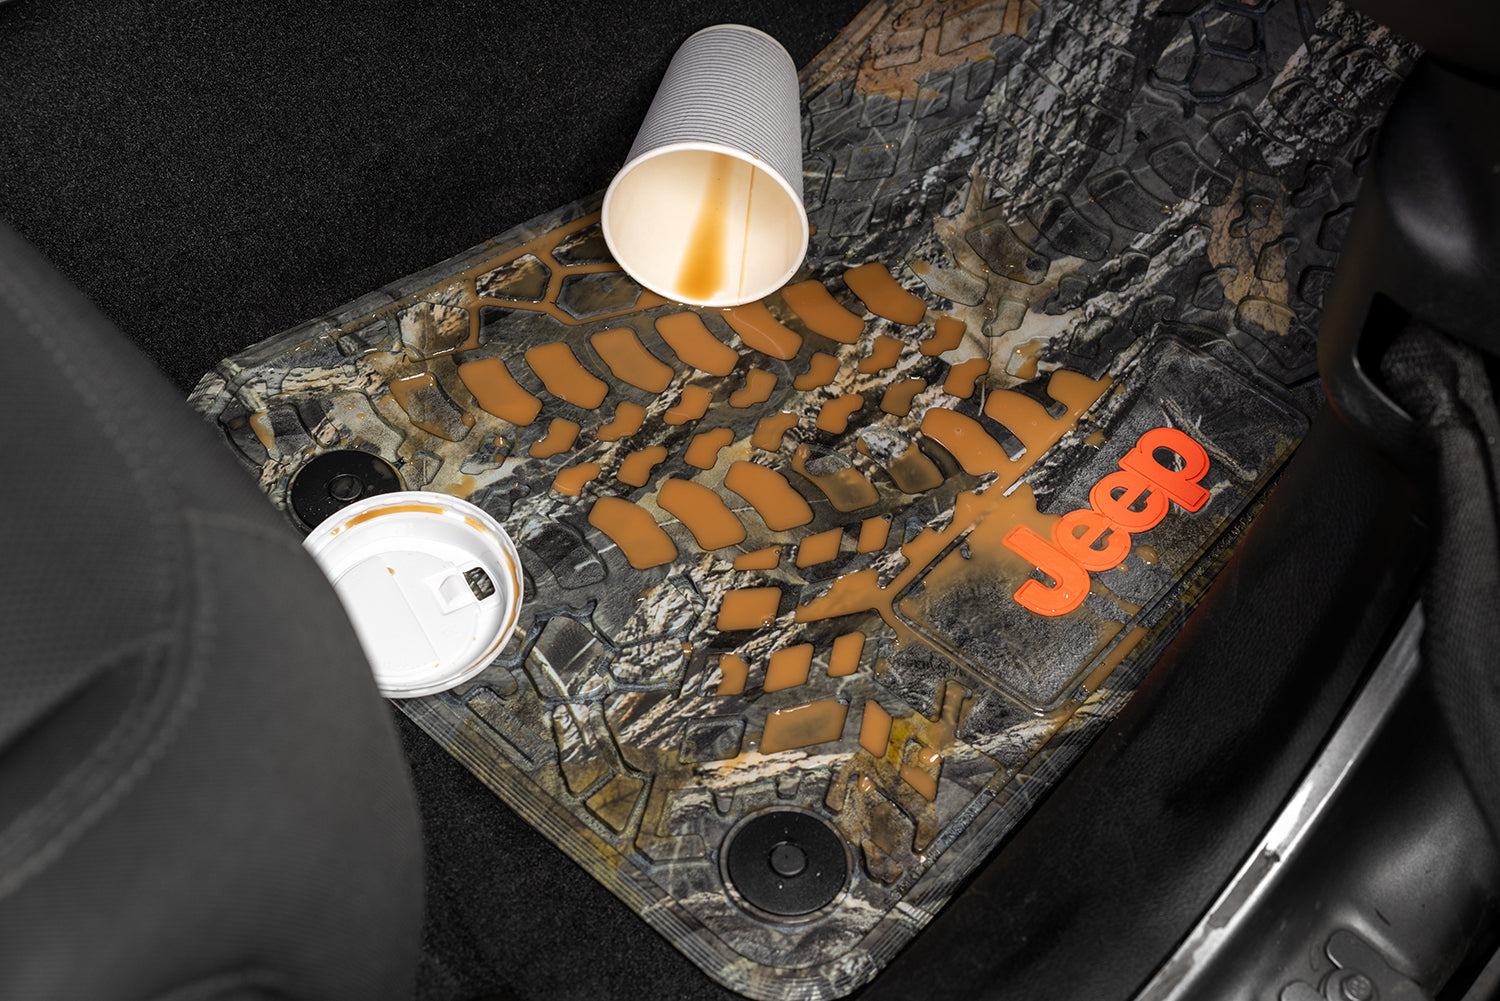 Jeep Floor Mats 07-13 Jeep Wrangler JK 2 Dr 2 Piece Tire Tread/Scorched Earth Scene w/ Rubicon Insert - Cyberflage w/ White Insert FlexTread